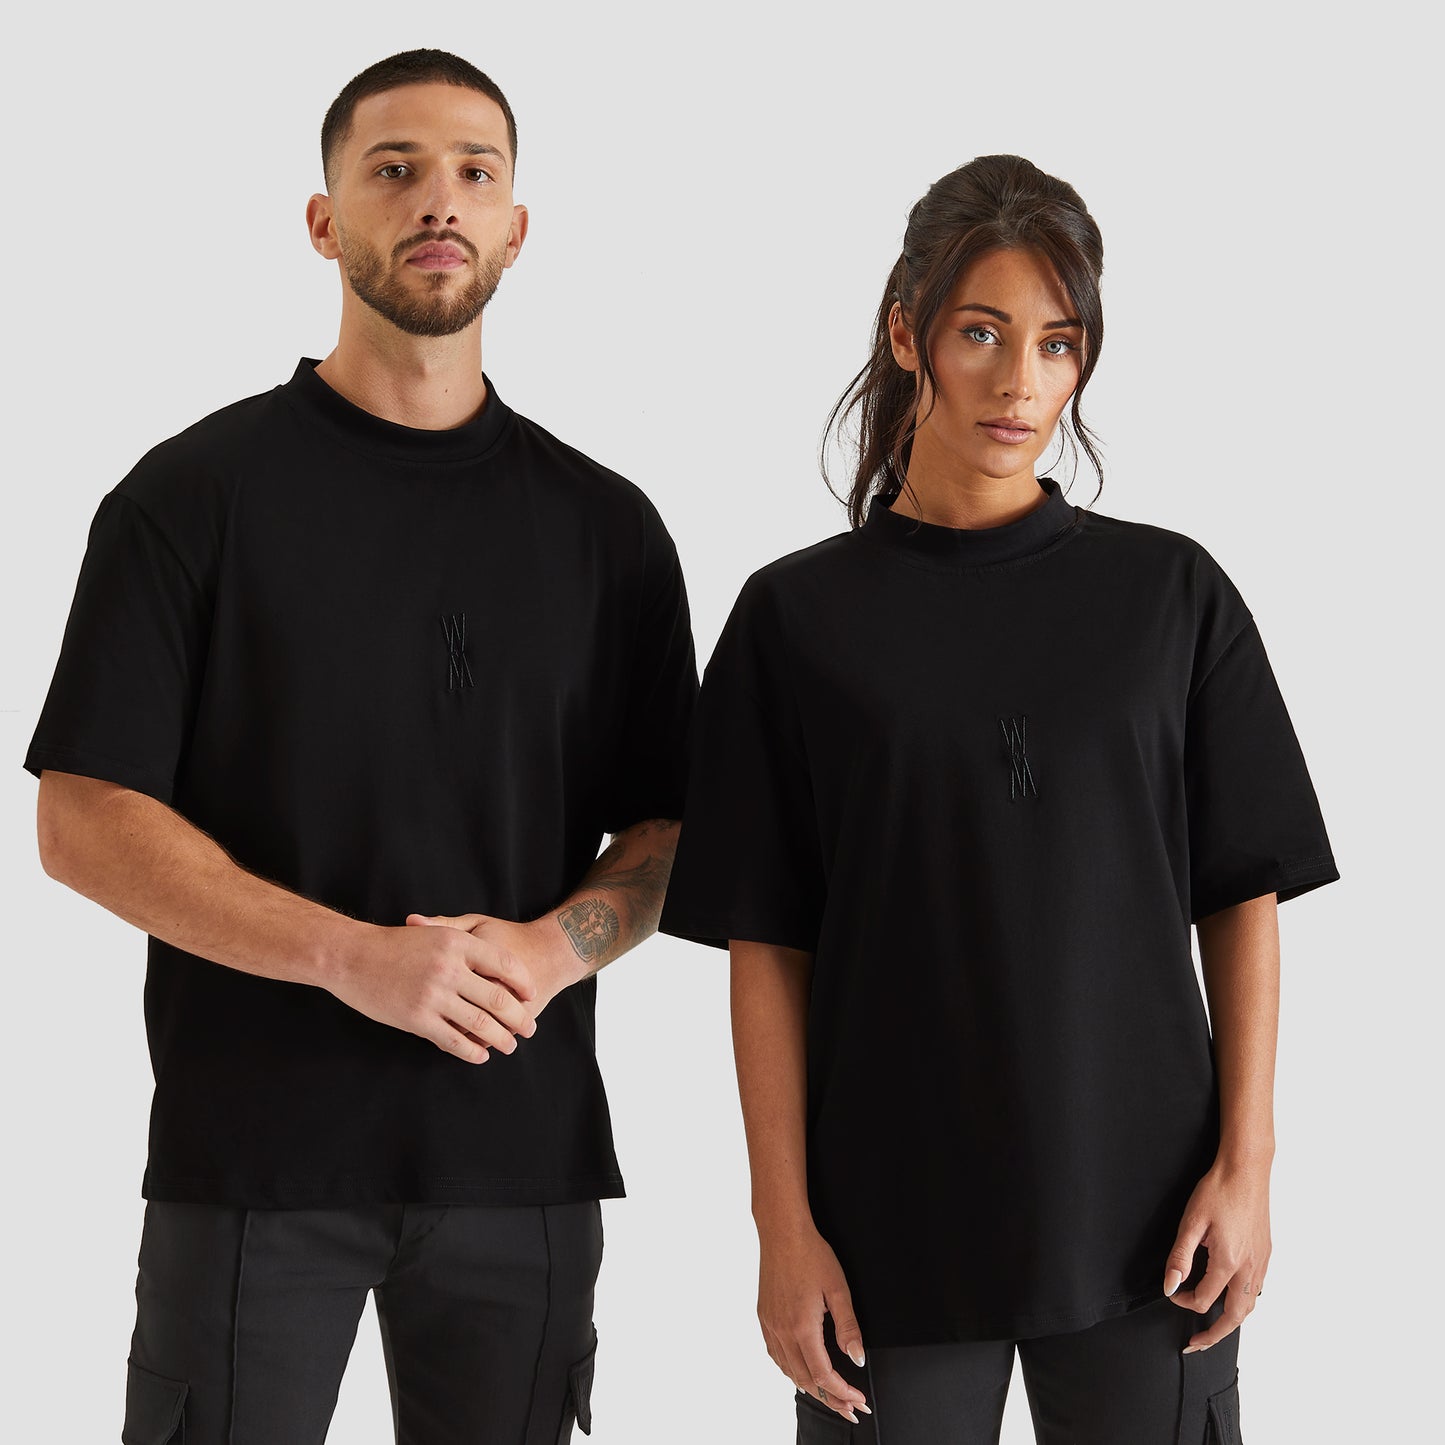 WXM Oversized T-shirt - Black